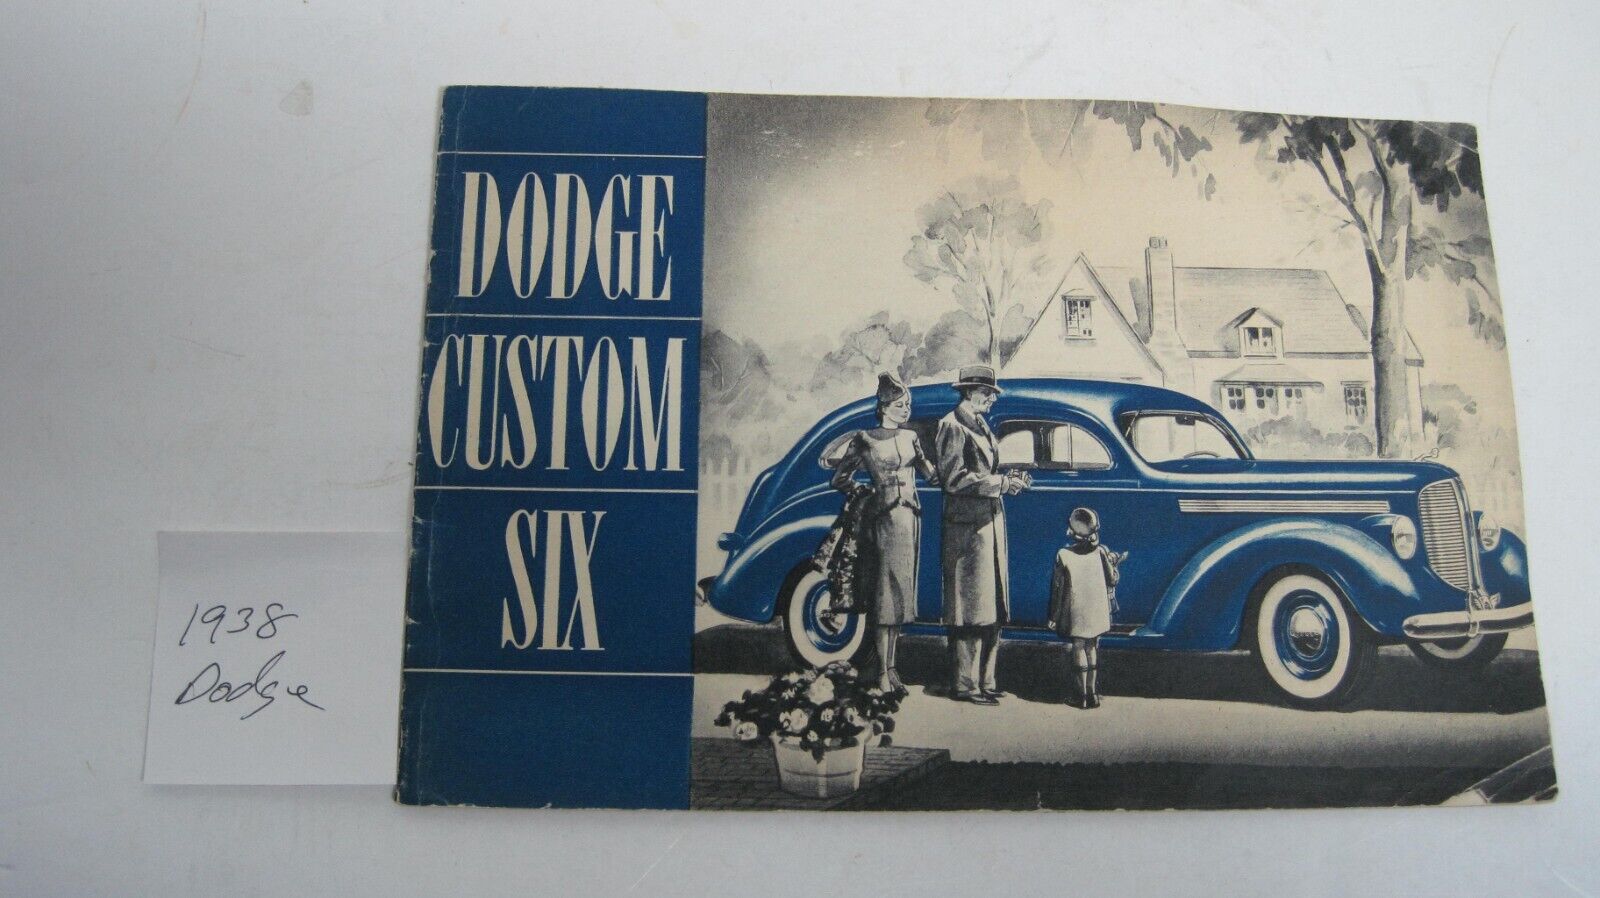 1938 Dodge Sales Brochure in Original Condition